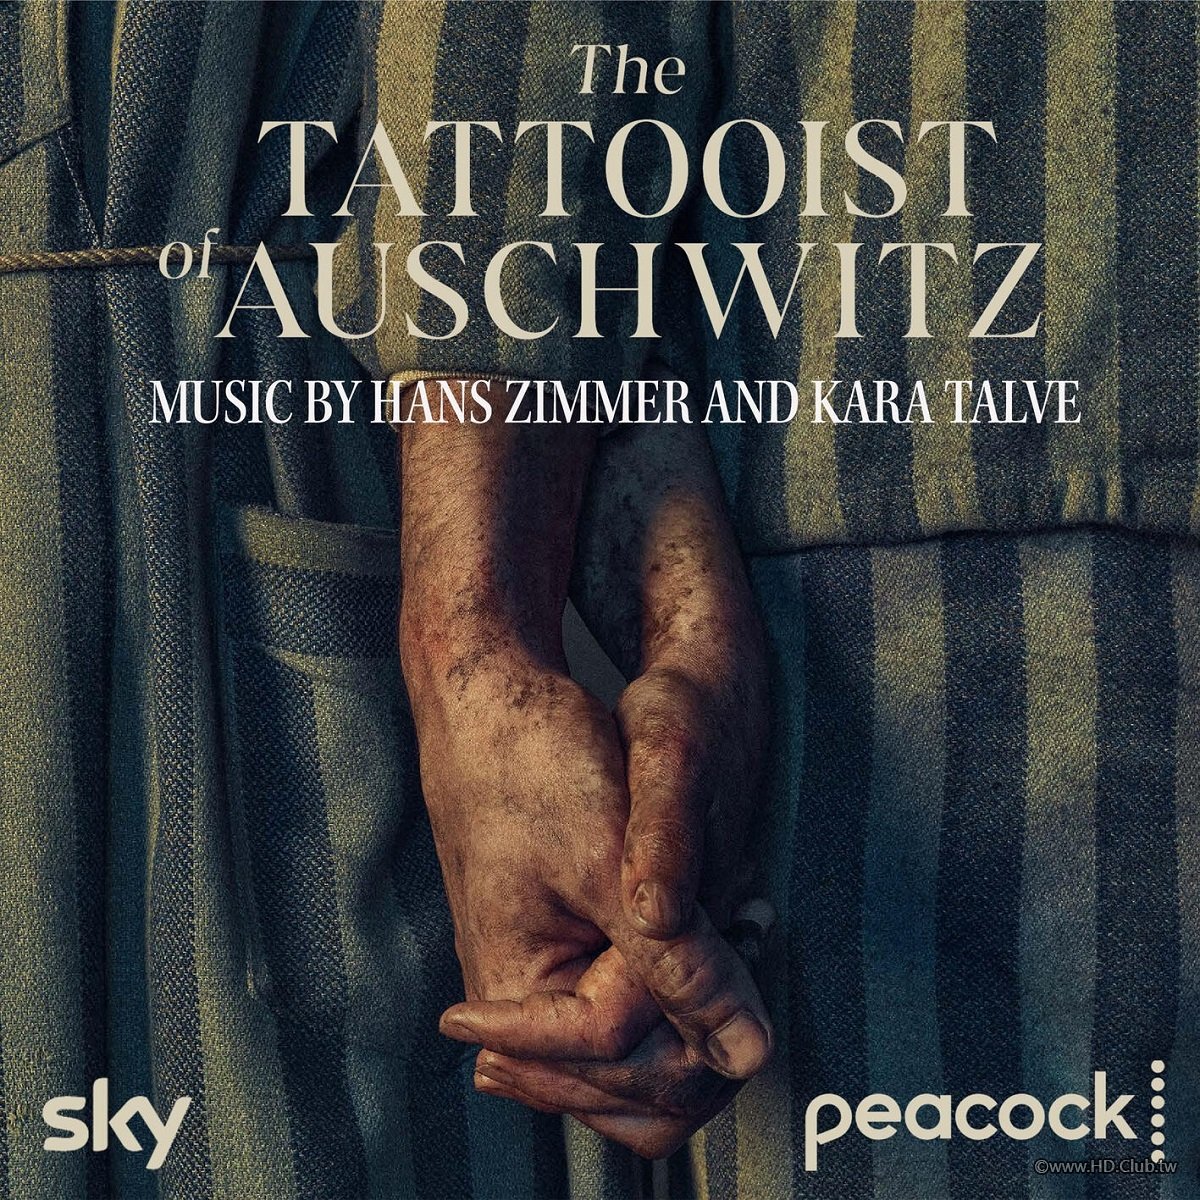 The Tattooist of Auschwitz-9.jpg